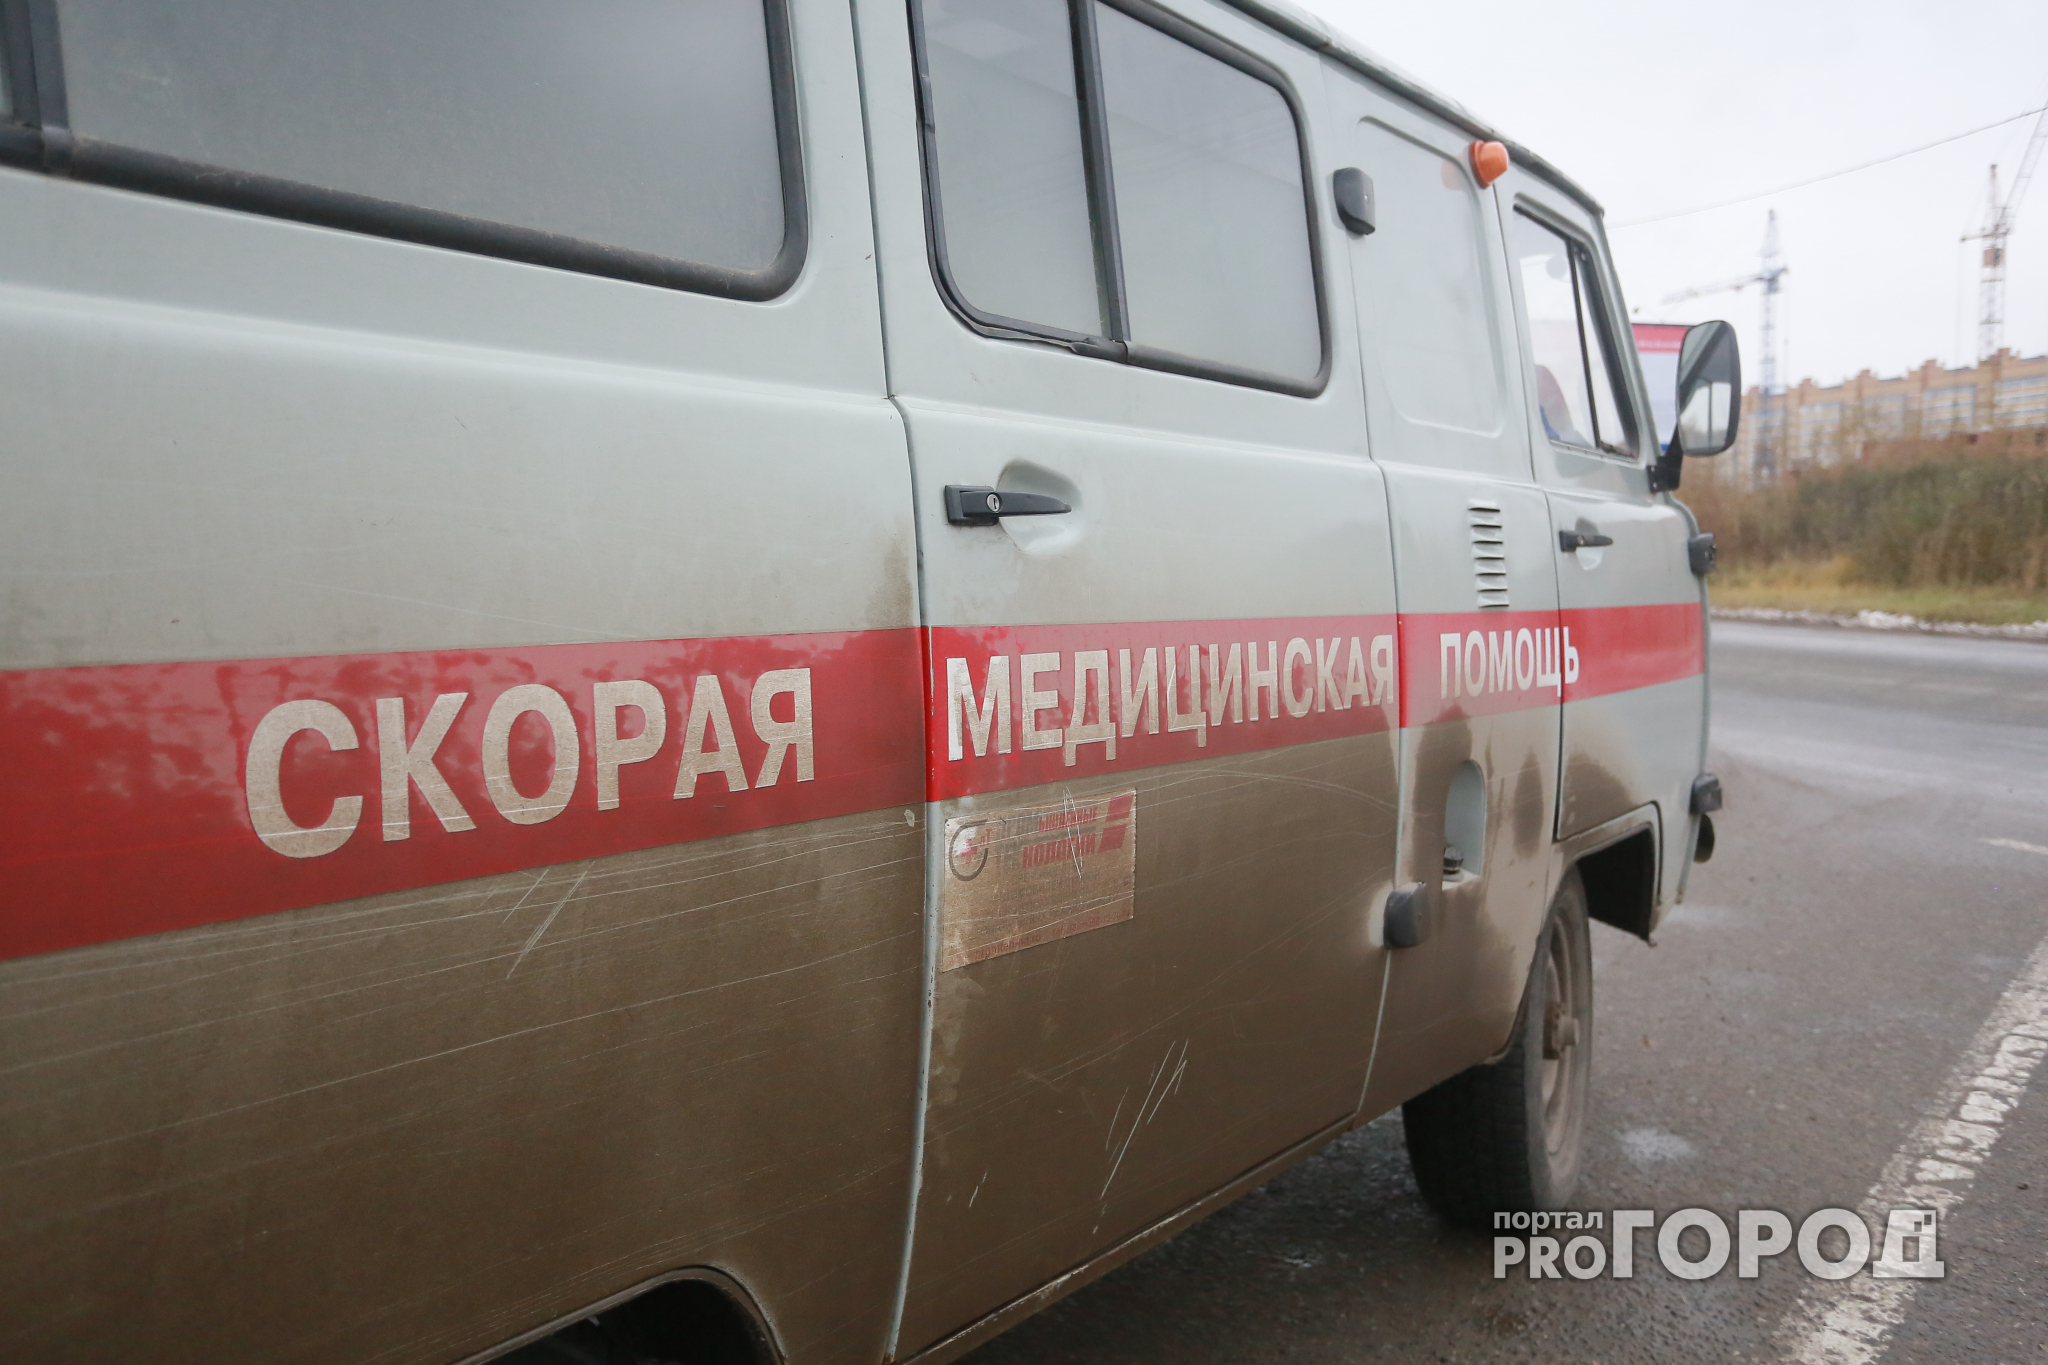 Кировские следователи проверят информацию об осколке в шее ребенка